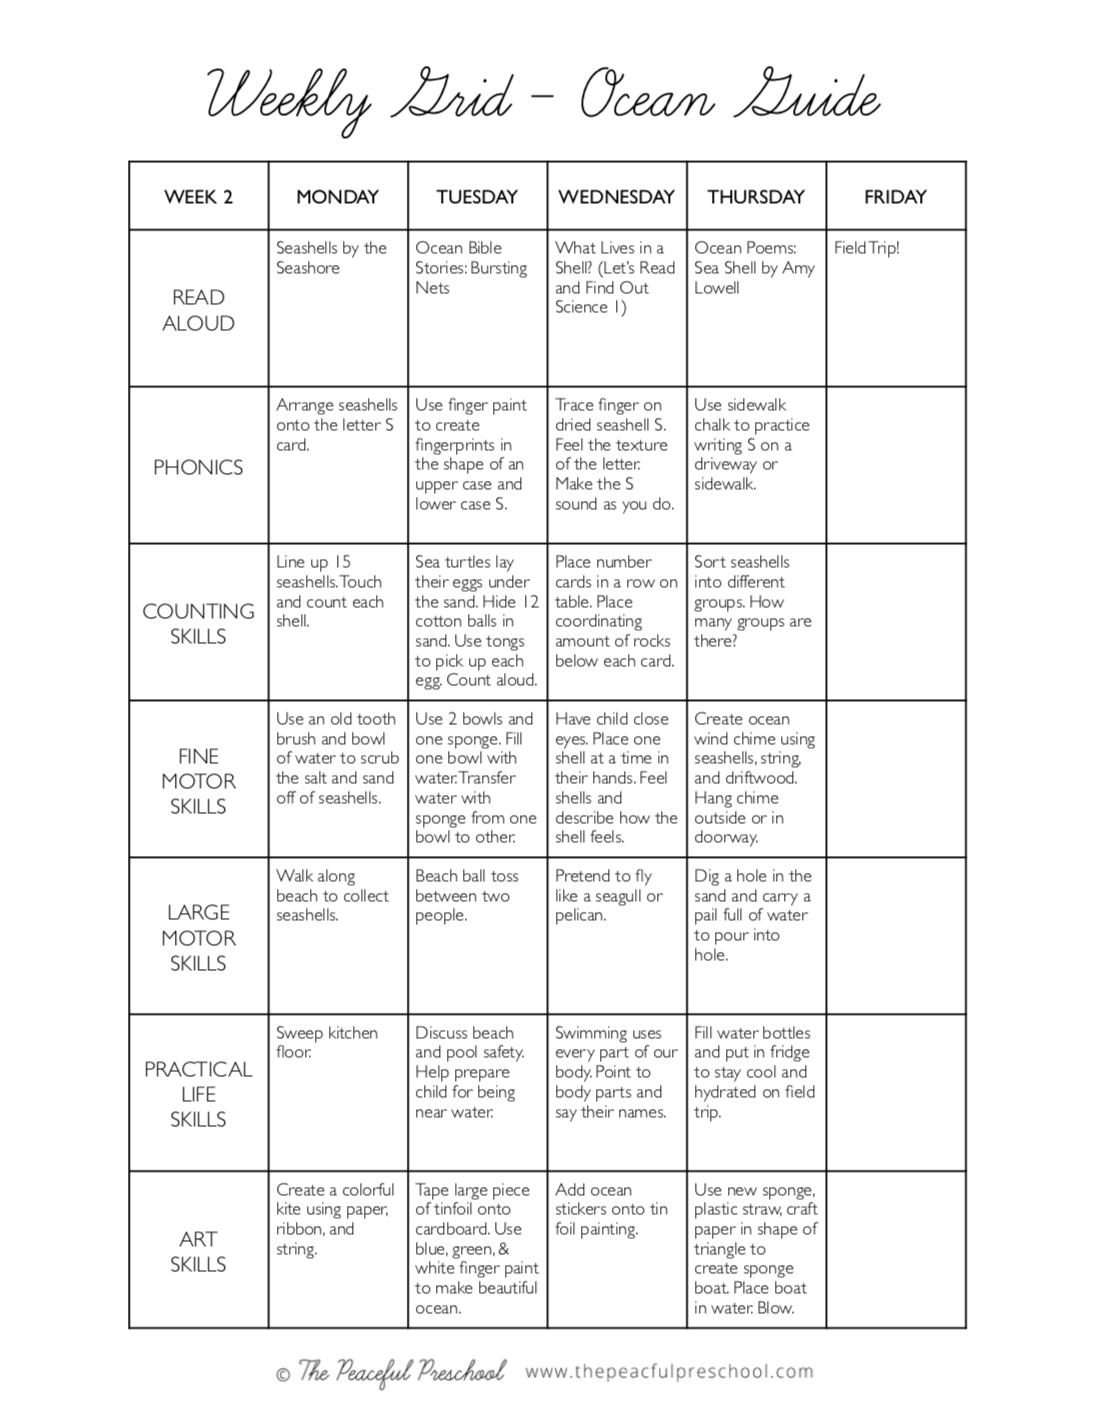 Weekly Grid Sample schedule for the Homeschool Ocean Guide.